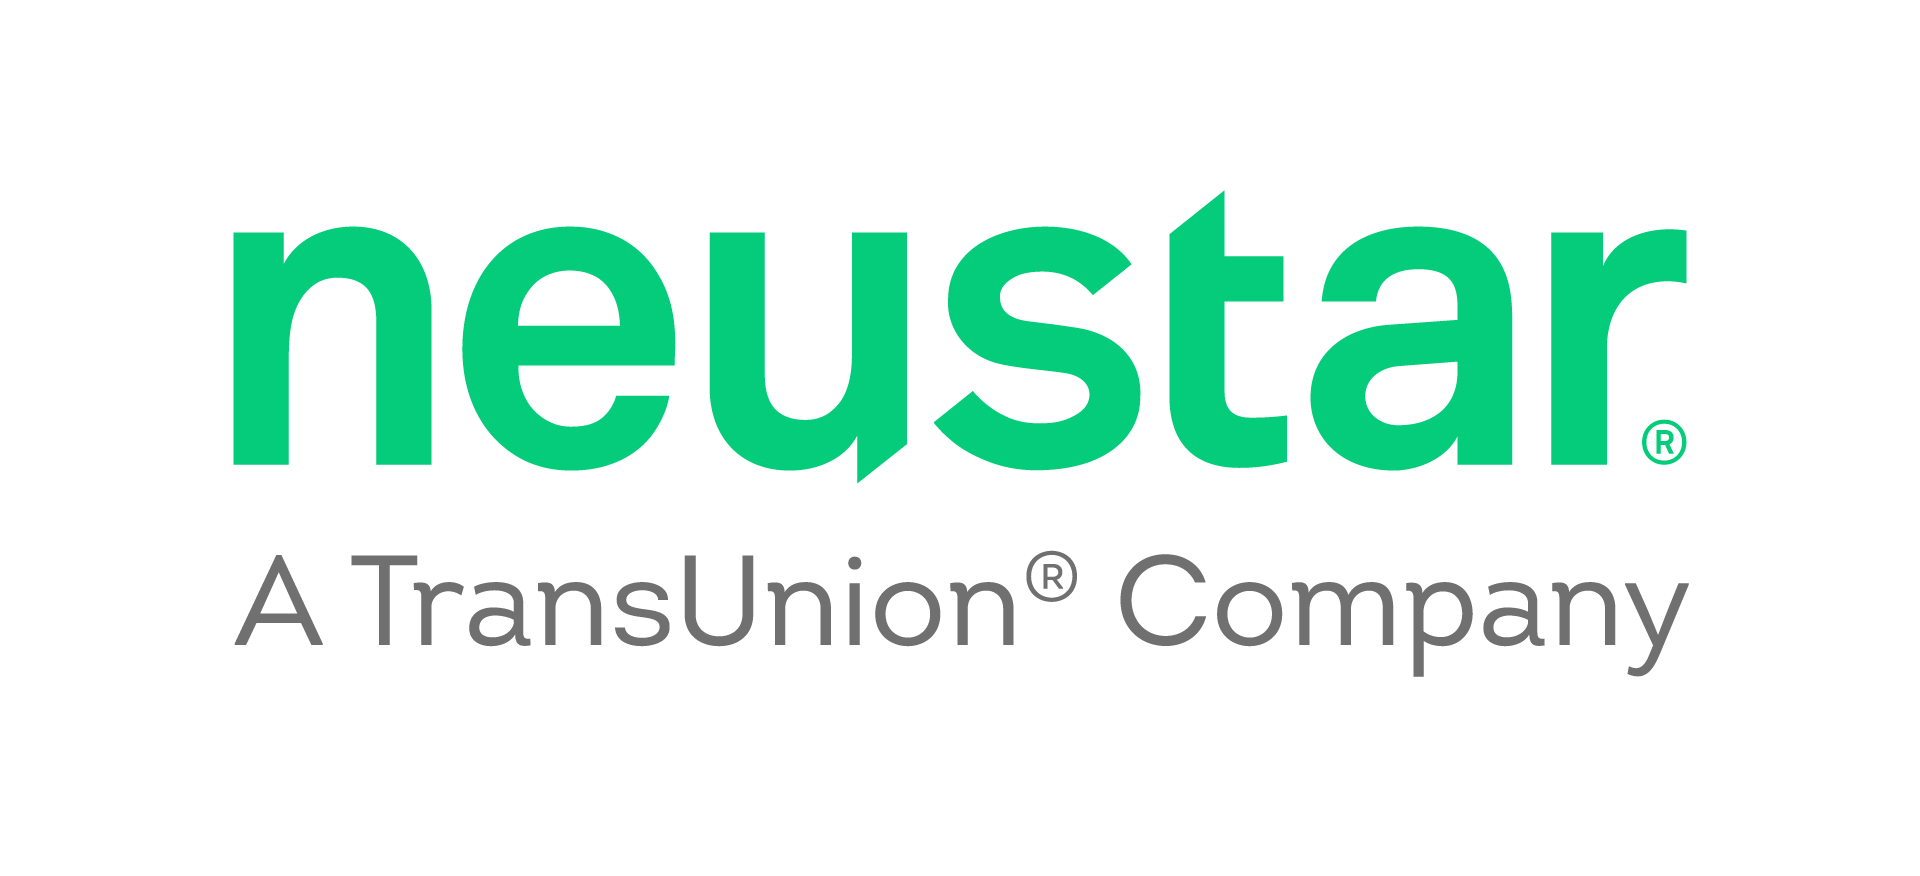 https://mms.businesswire.com/media/20220322005553/en/1396940/5/01_Standard_Neustar_Logo.jpg 